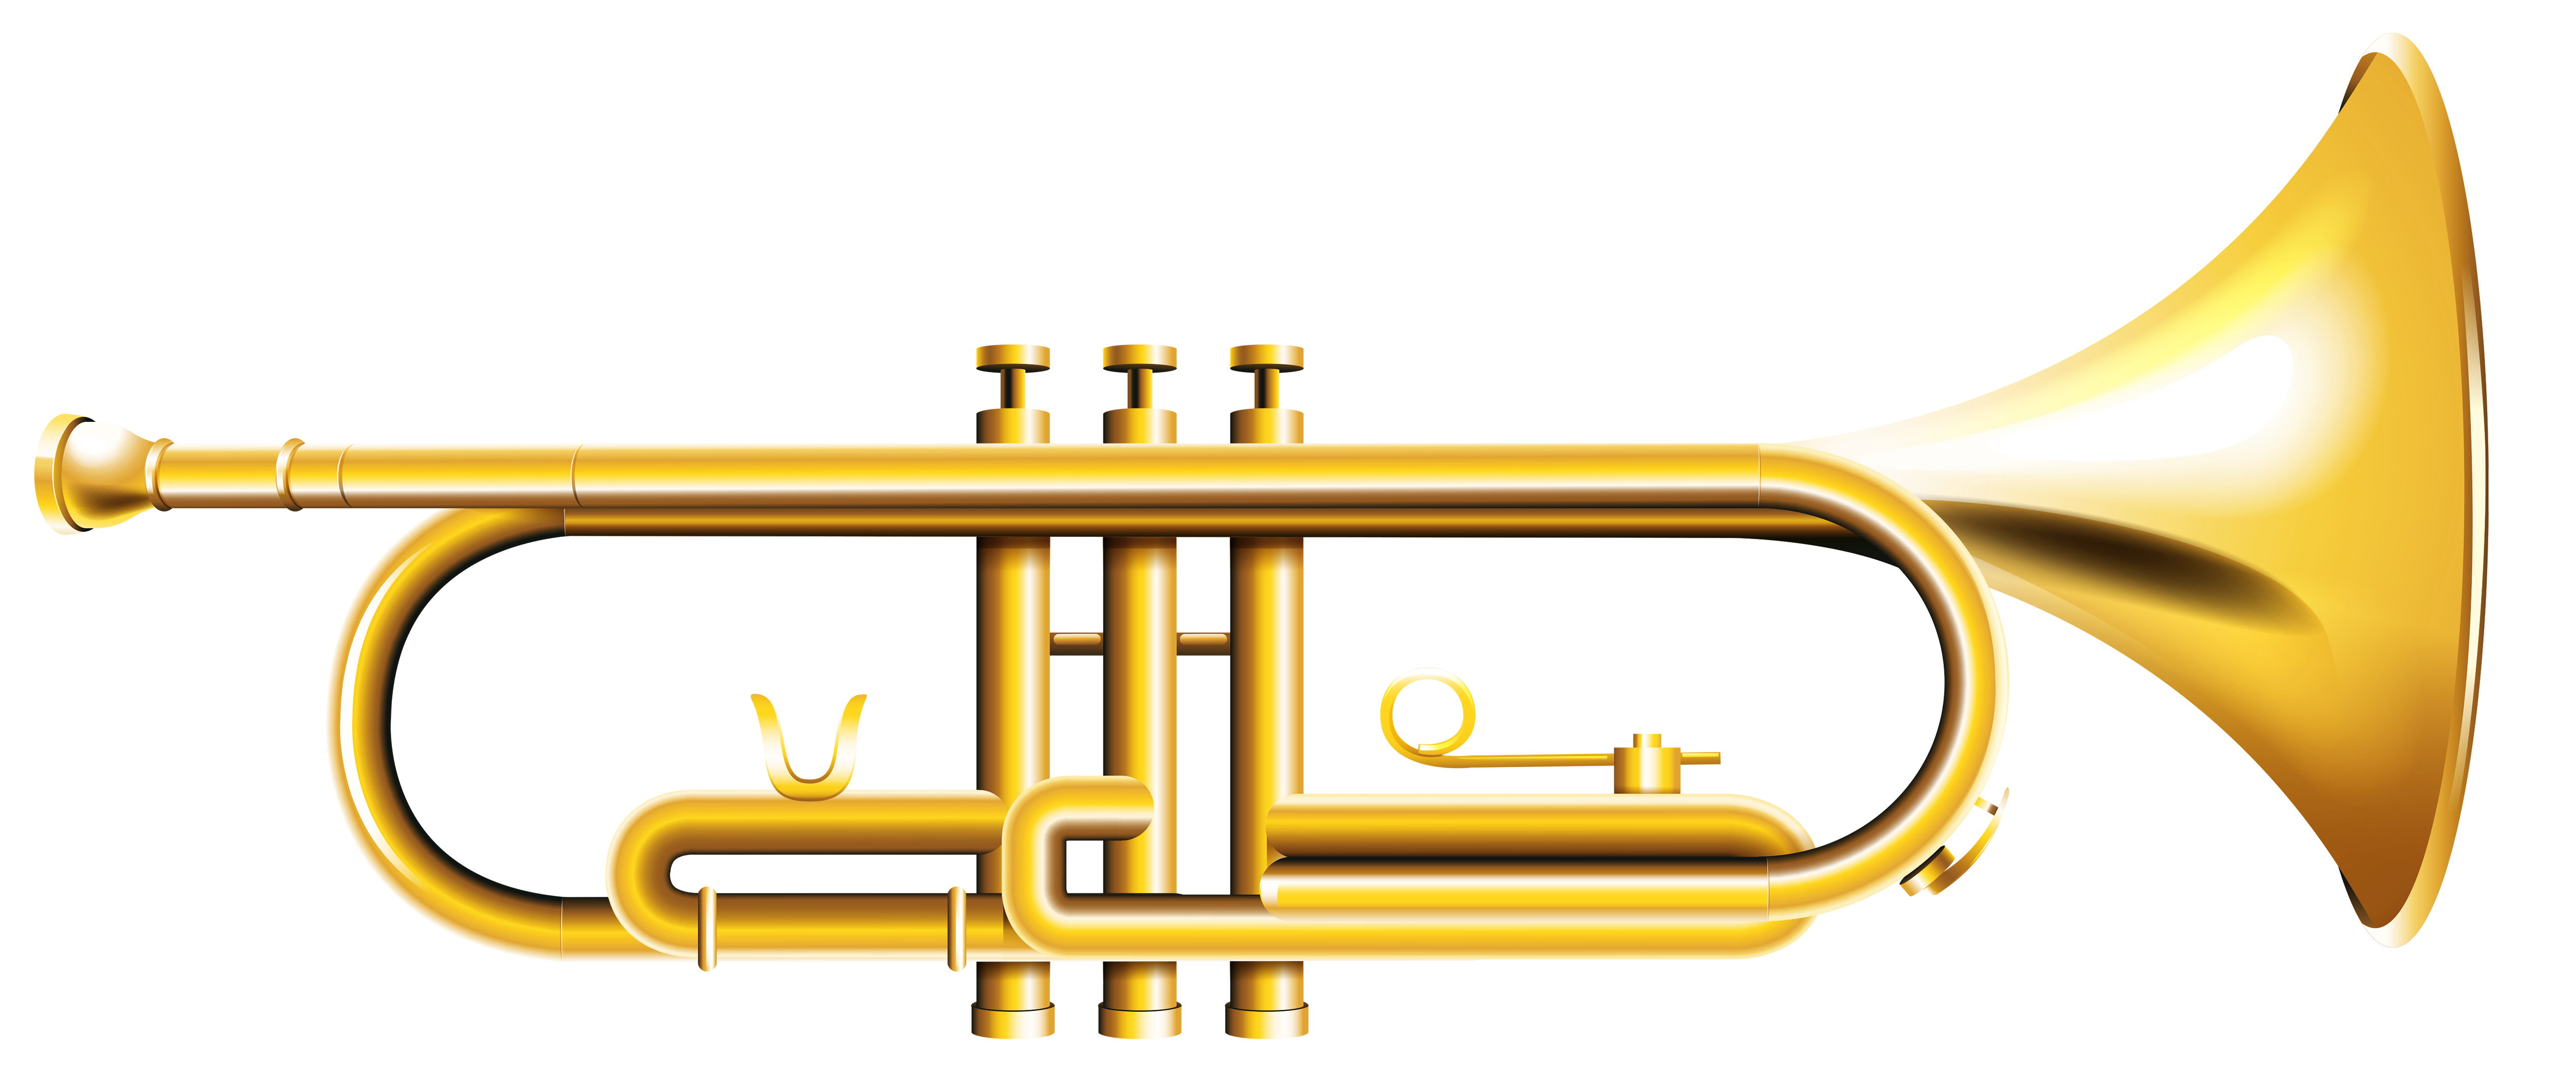 Trumpet PNG HD - 128965